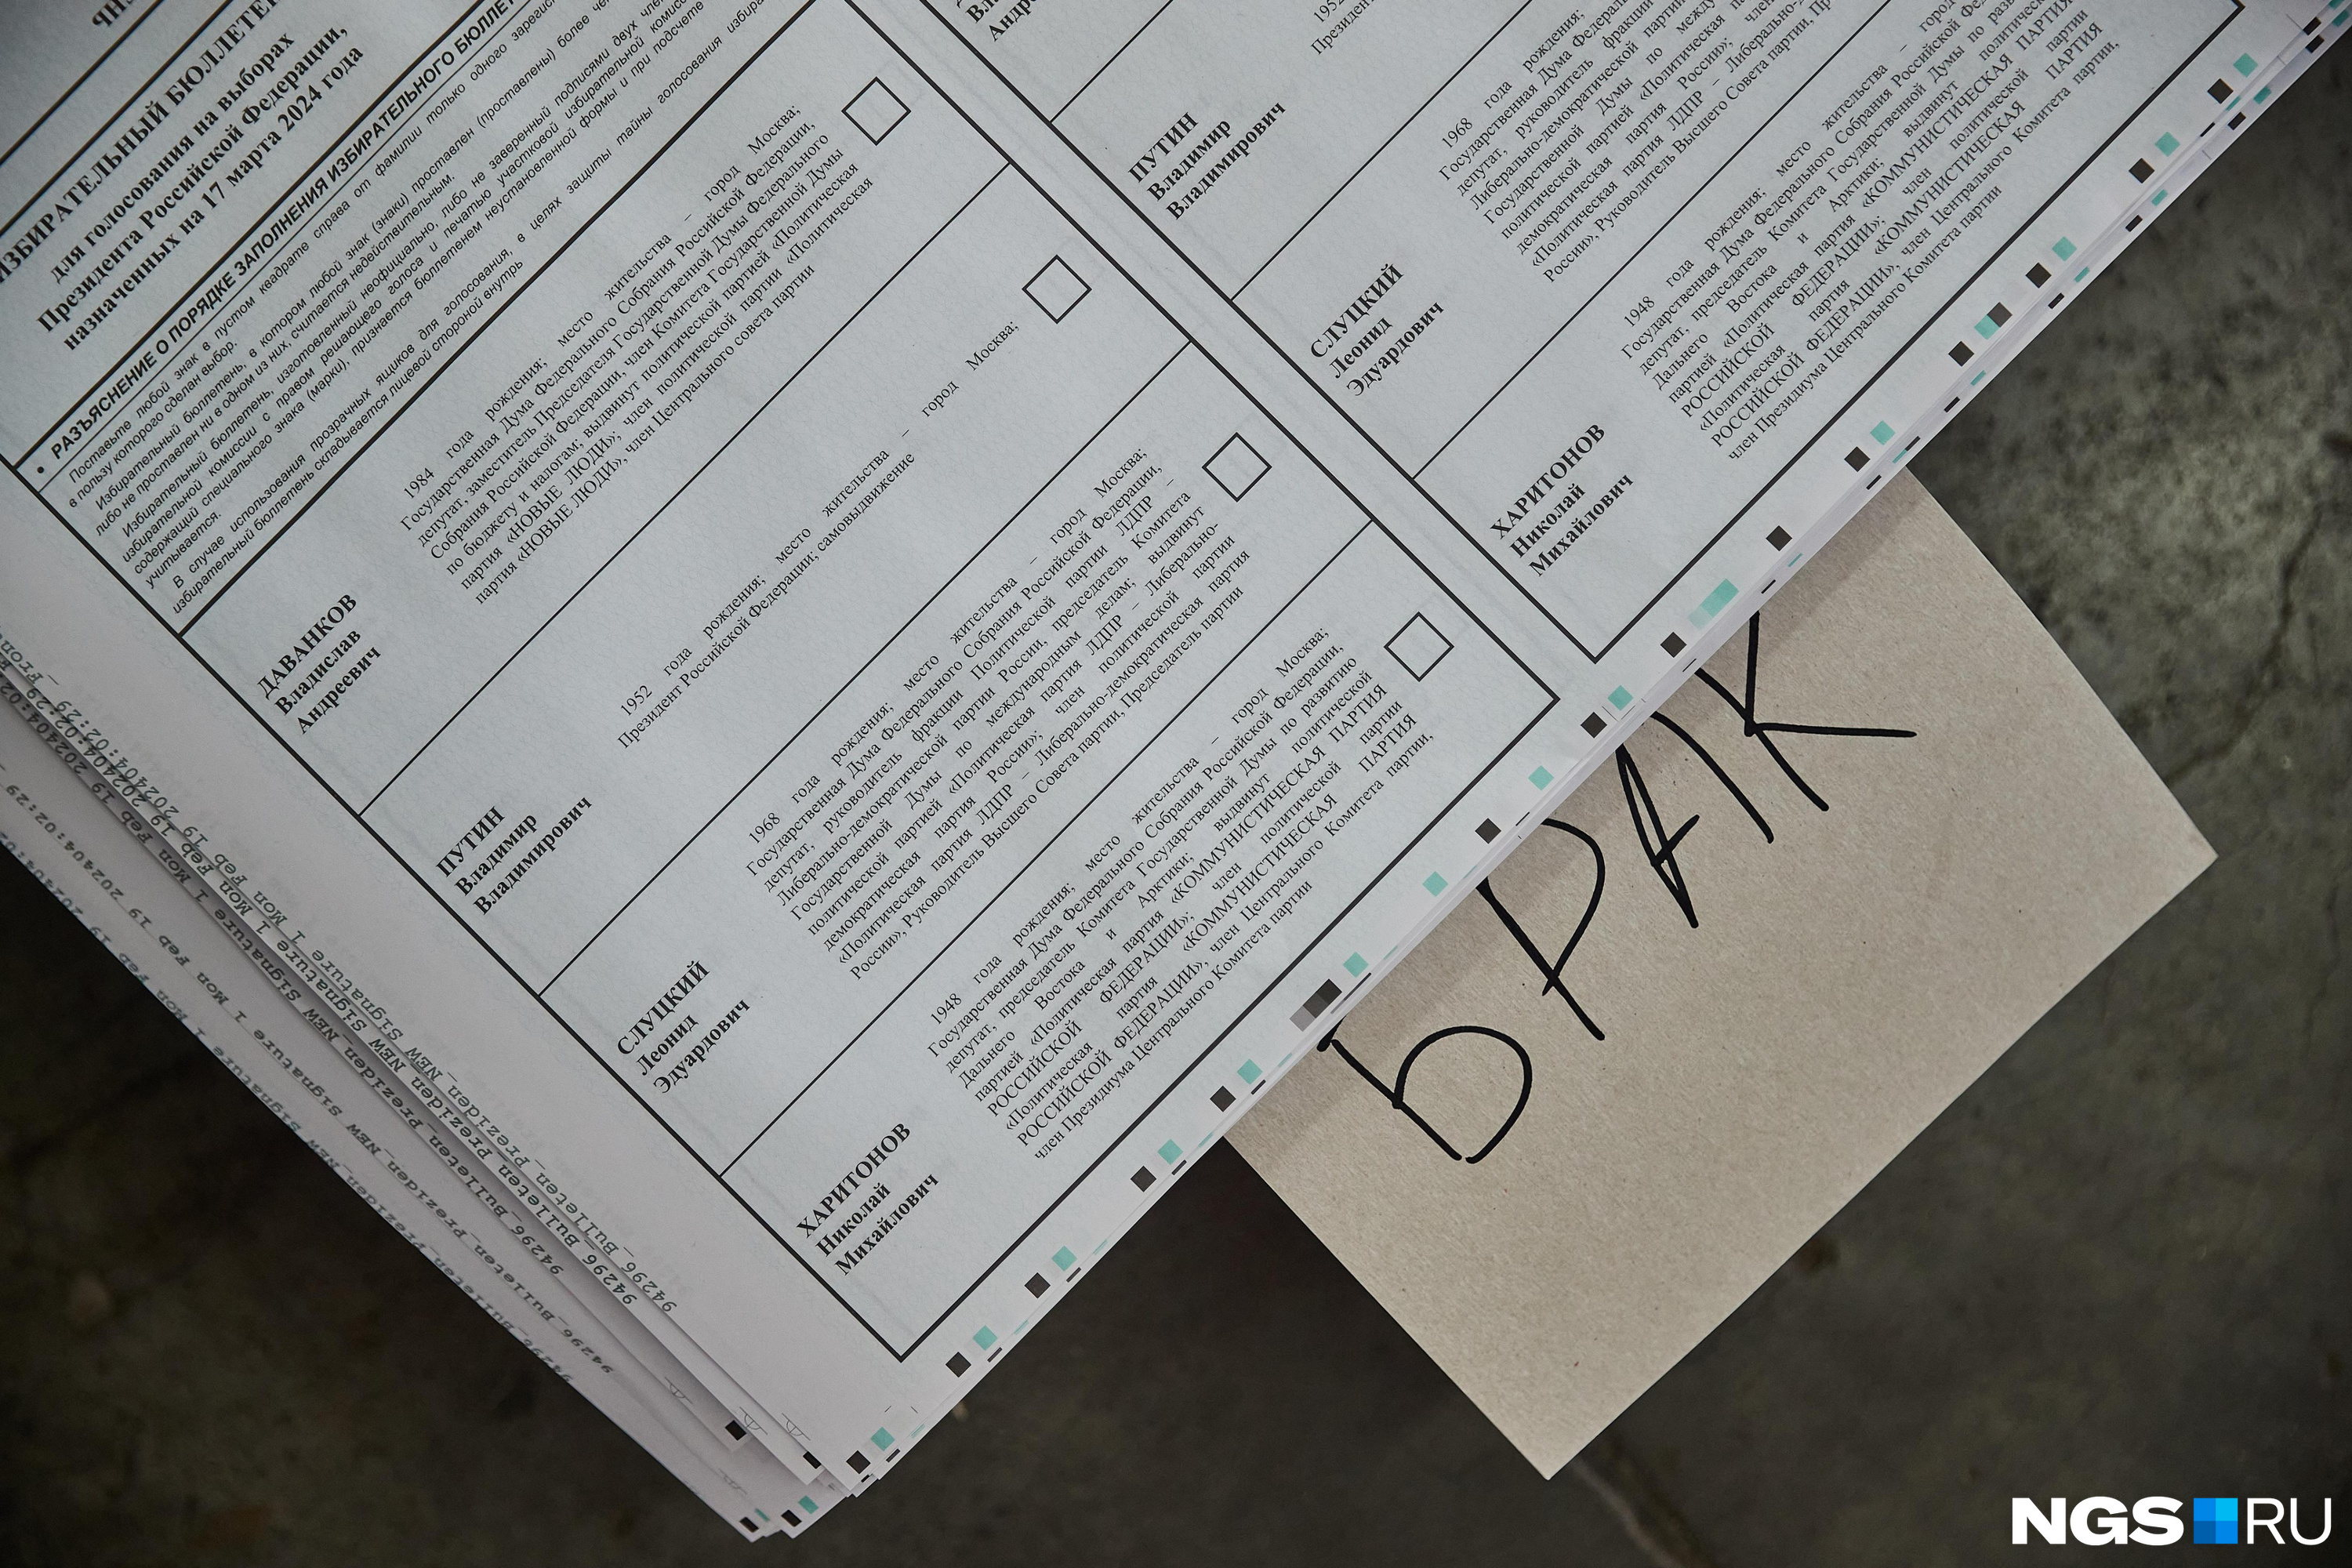 Забайкальцы испортили в полтора раза больше бюллетеней, чем на прошлых выборах президента